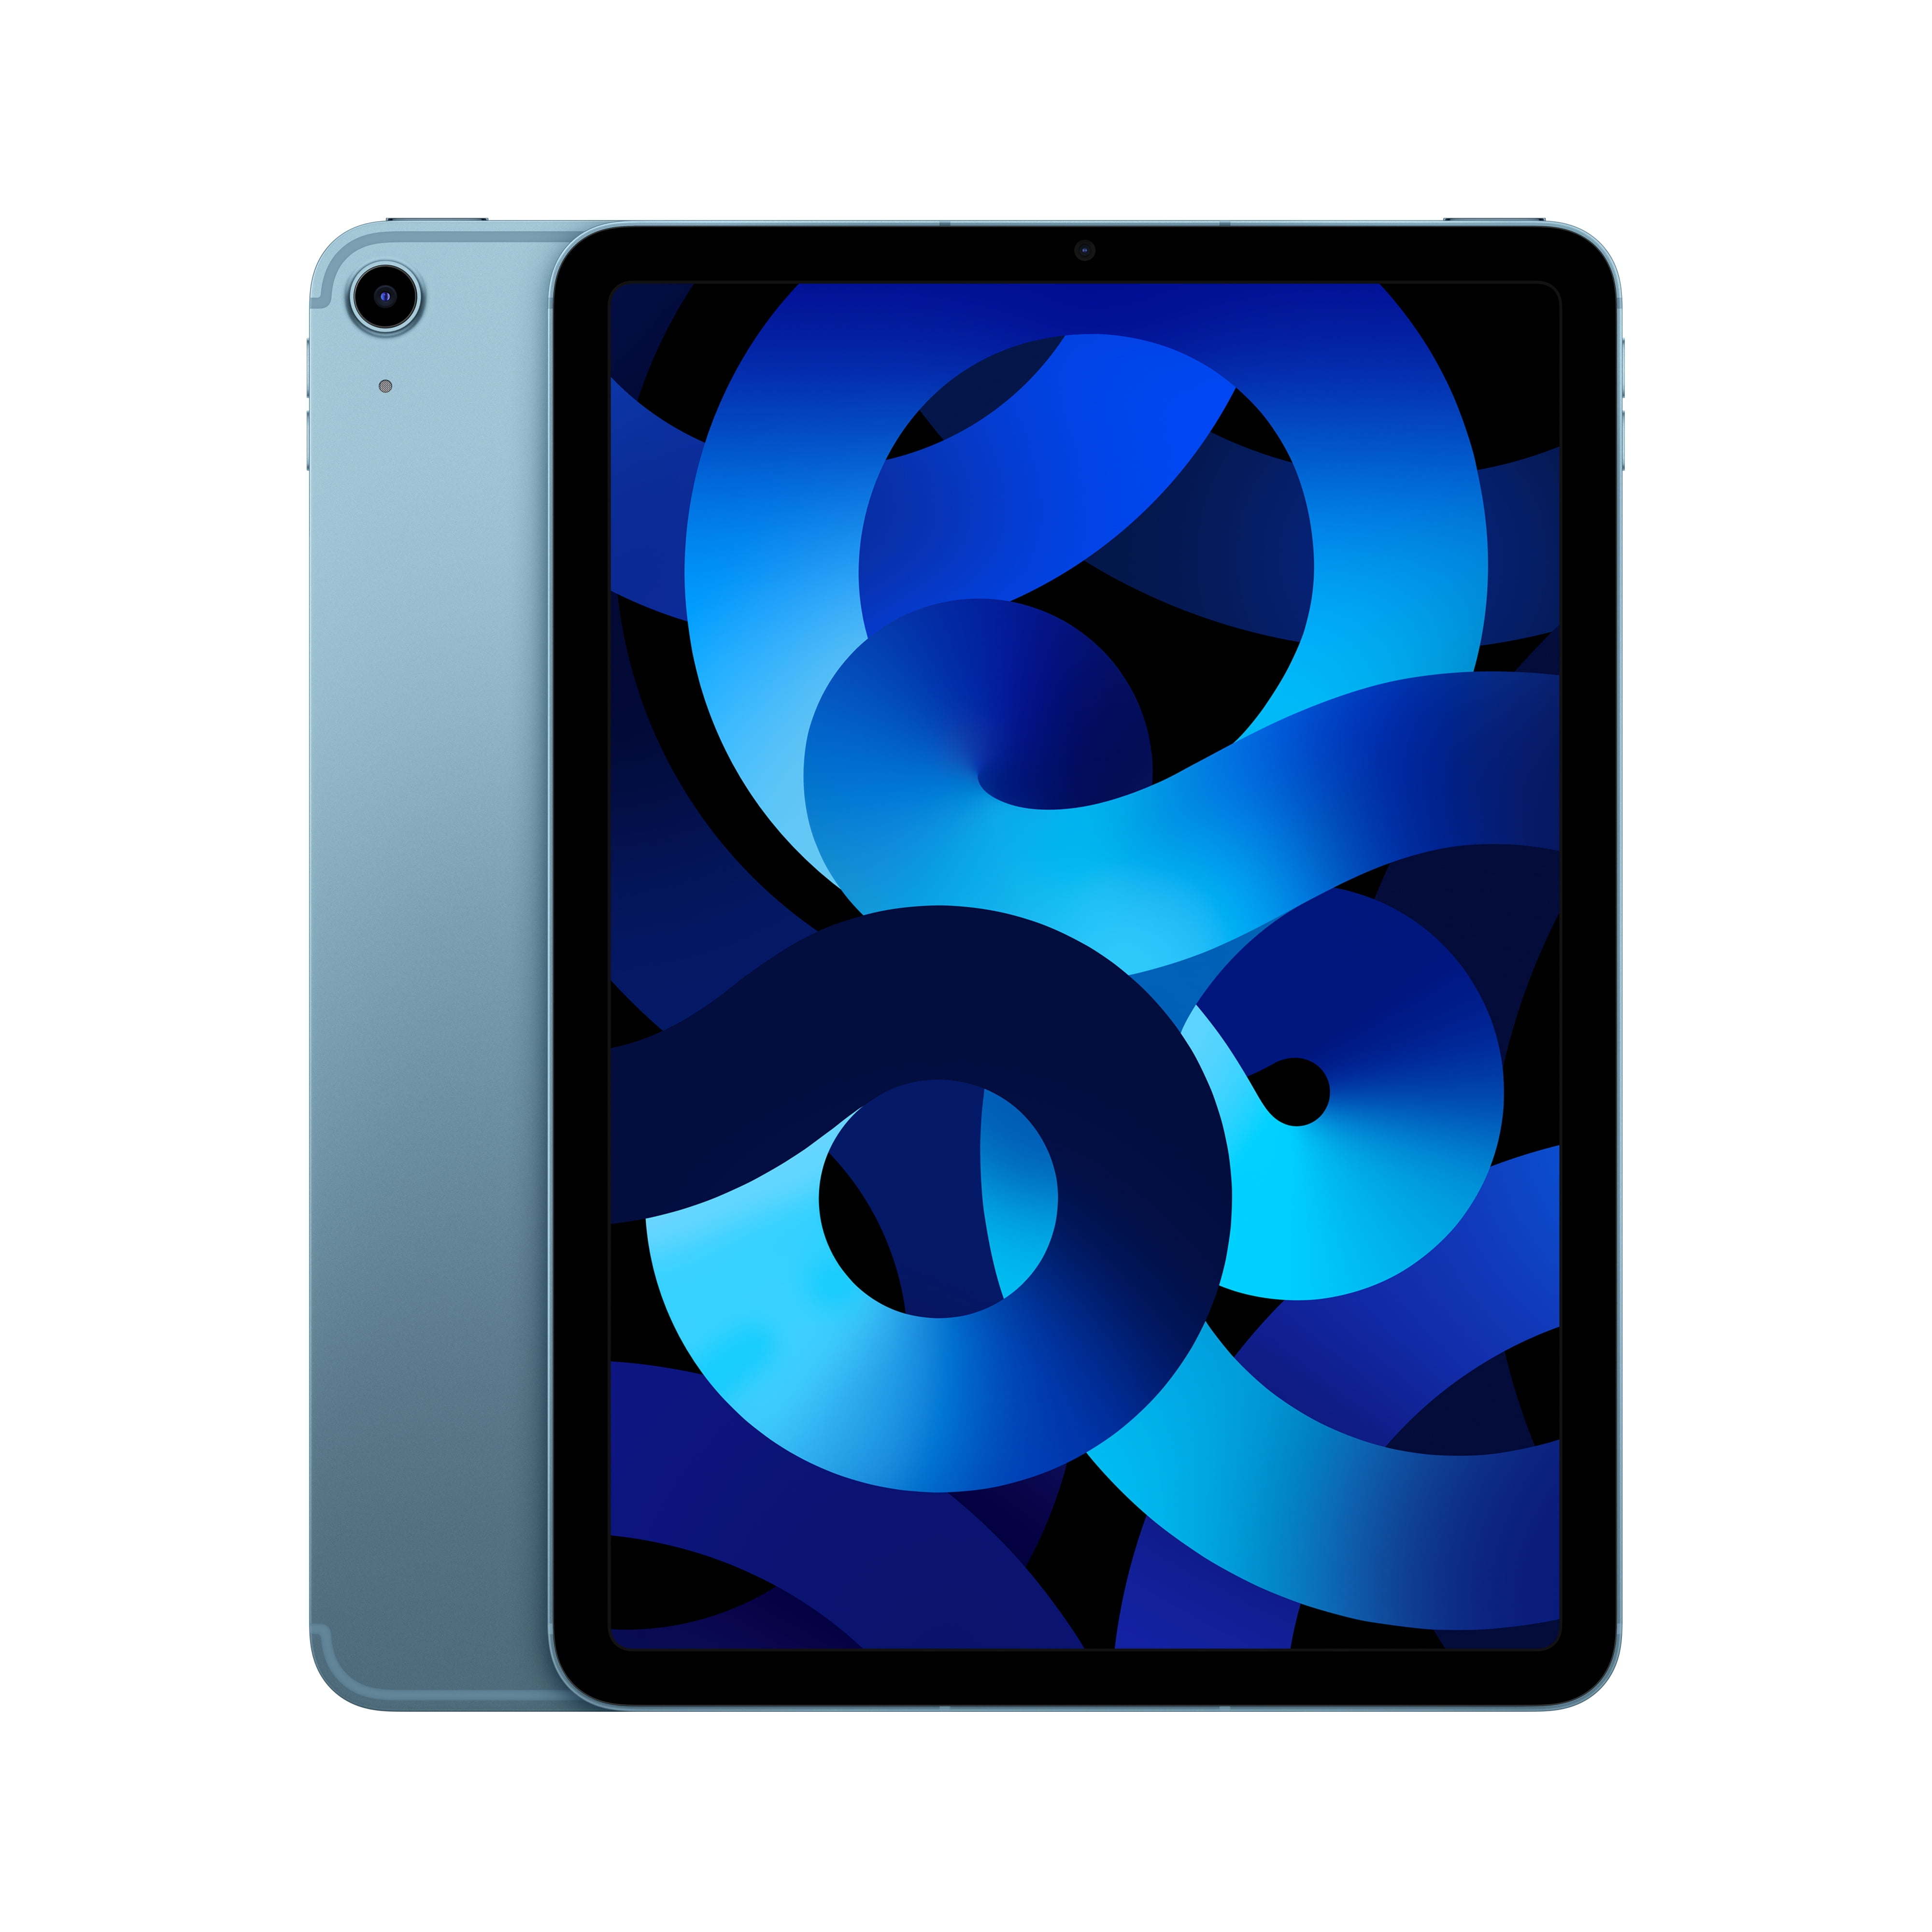 Refurbished iPad Air Wi-Fi 256GB - Sky Blue (4th Generation)